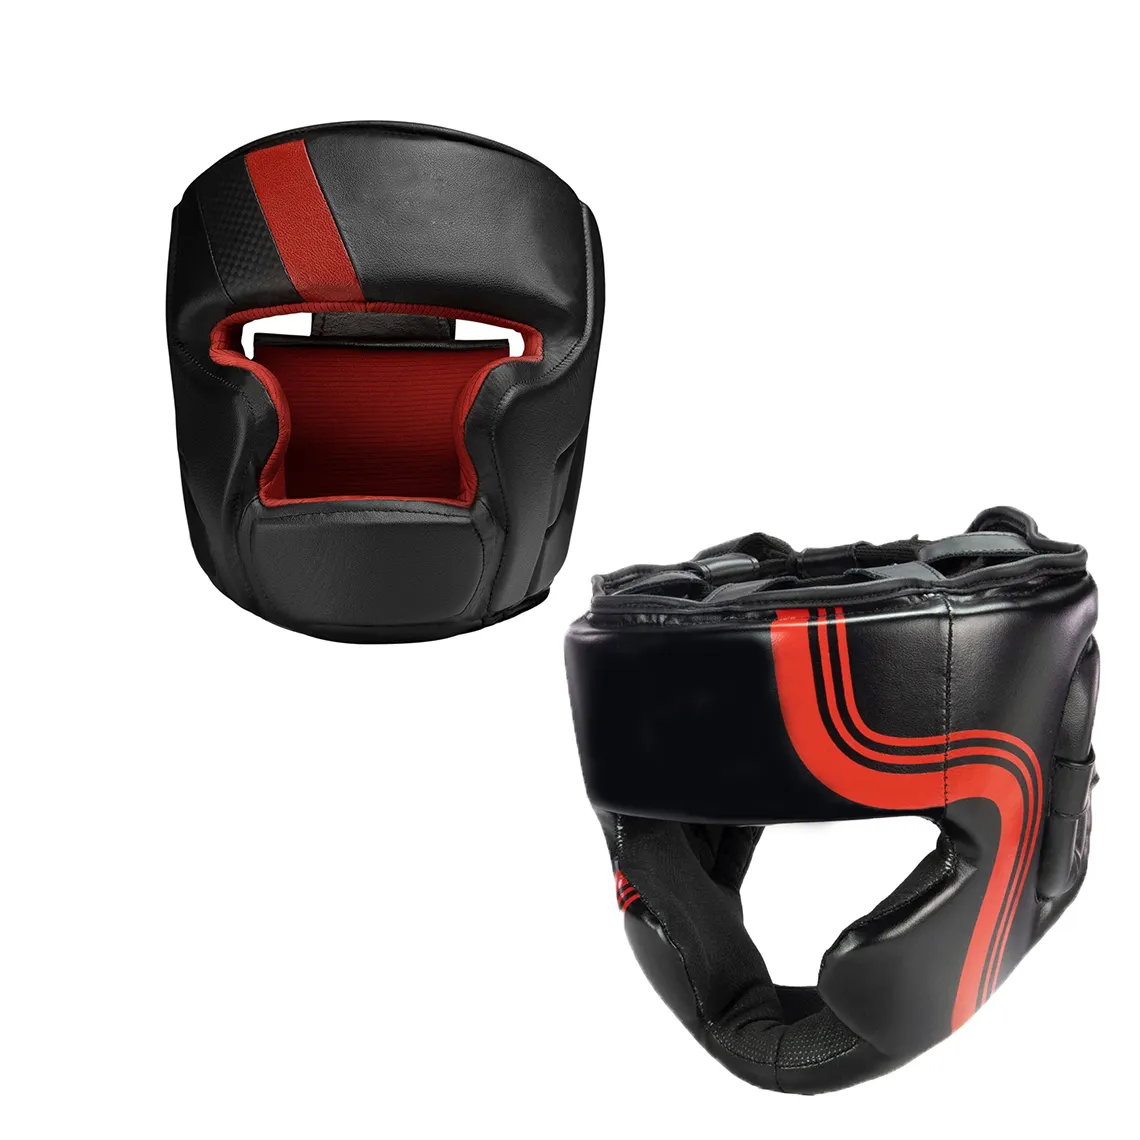 Neuankömmling Kopfschutz Maßge schneider tes Design Leder/PU Kopfschutz Hochwertiger verstellbarer Boxtraining Kopf bedeckung shelm